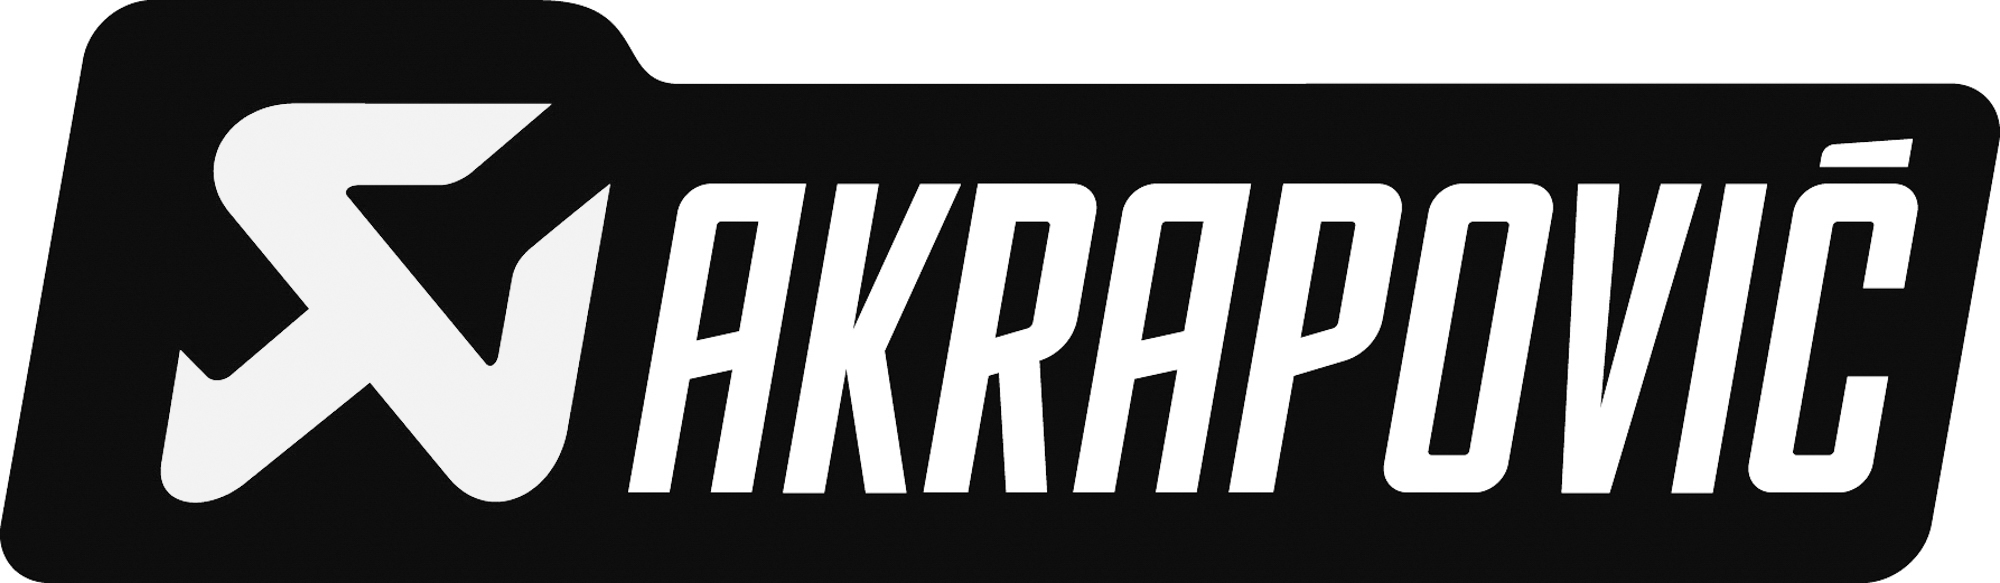 Akrapovic-logo-2007-aflangt-sort-roed-hvid.jpg